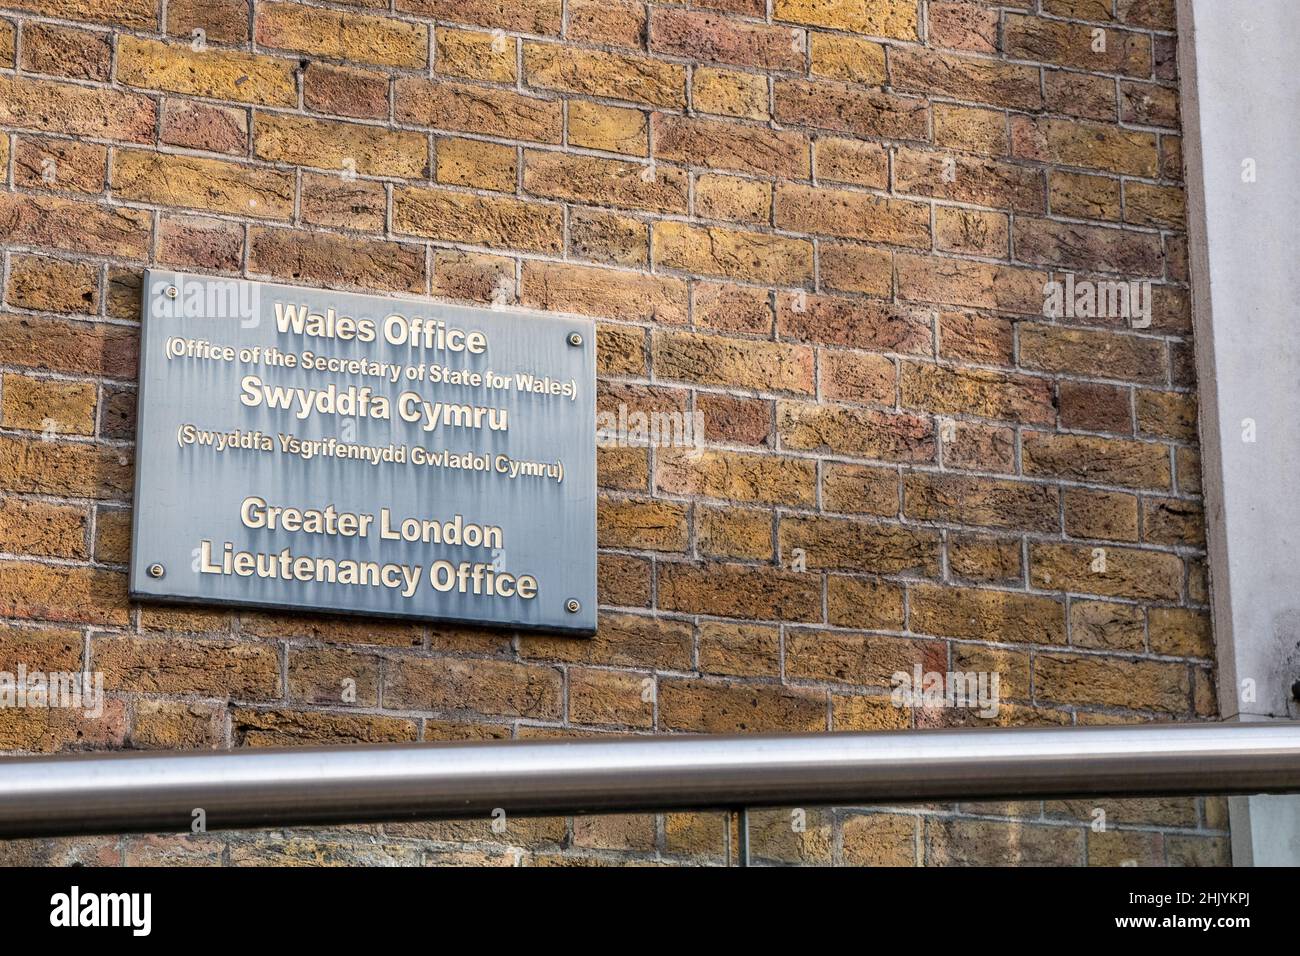 La oficina galesa, Whitehall, Londres. Firma de la oficina del Secretario de Estado de Gales, un departamento gubernamental del Reino Unido. Foto de stock